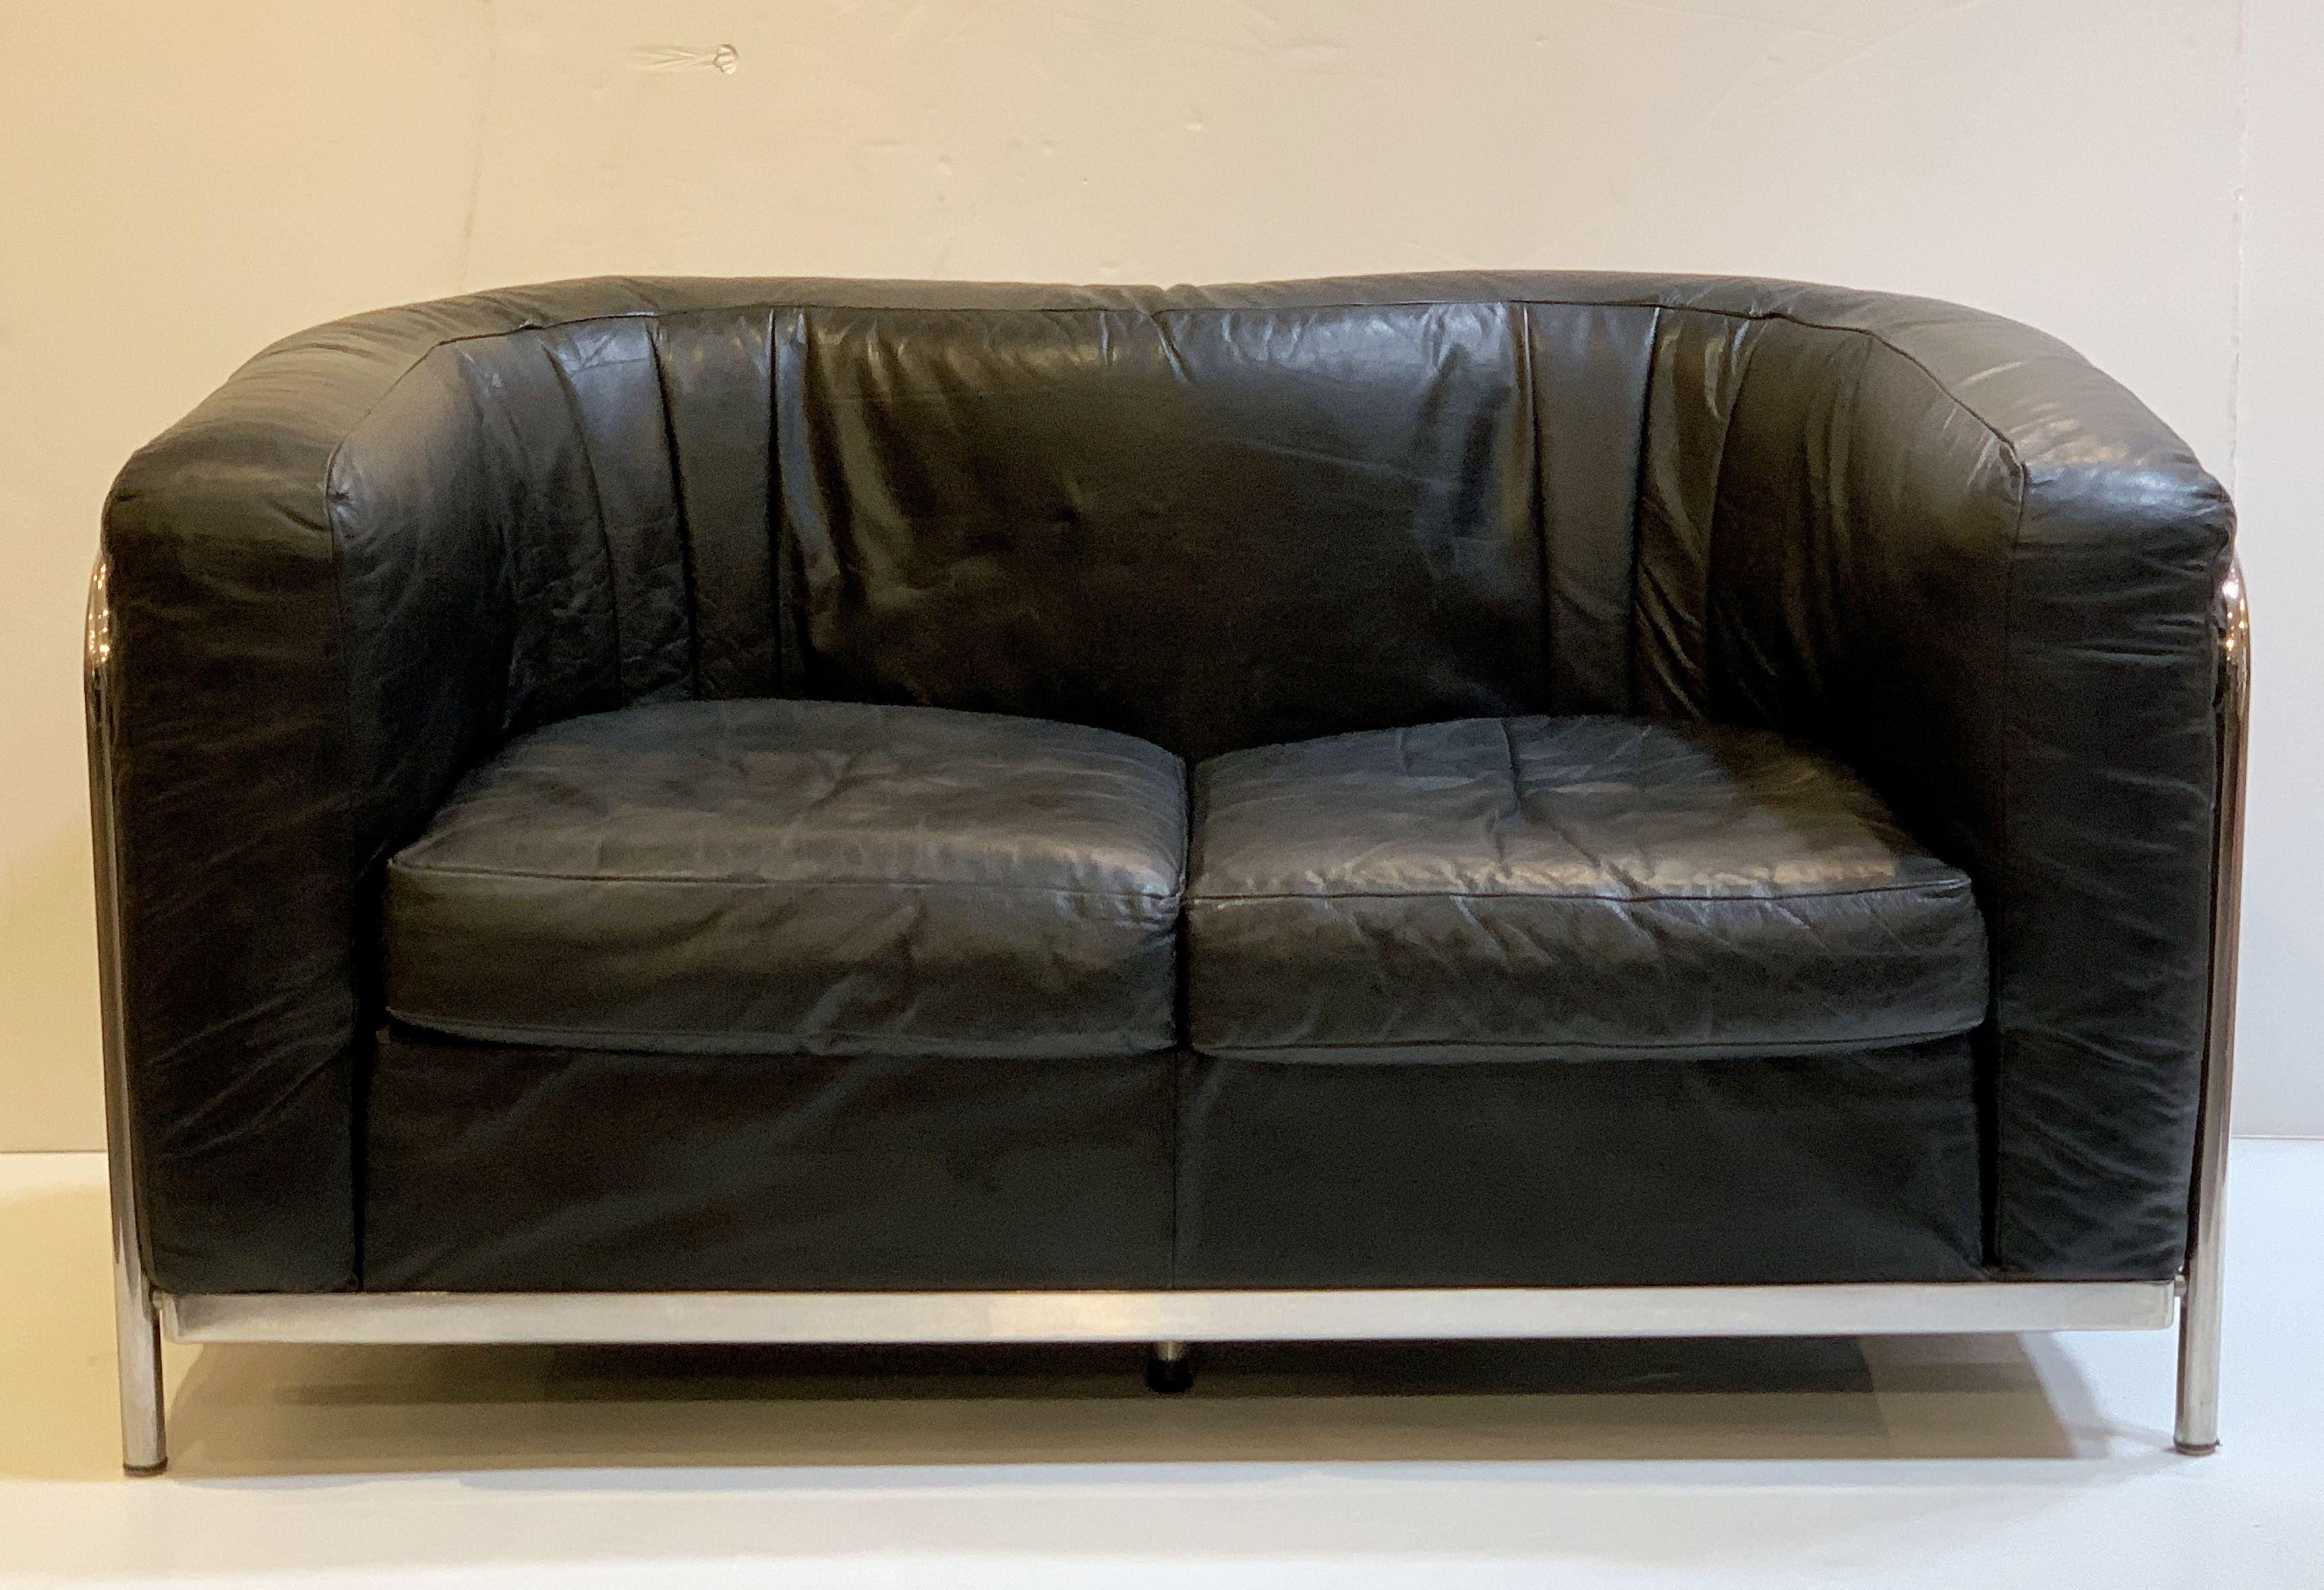 Canapé italien de style moderne, élégant et confortable, doté d'un corps tubulaire arqué en chrome, d'un dossier et de côtés rembourrés en cuir noir, de deux coussins d'assise ajustés en cuir noir, et reposant sur des pieds chromés.

Le canapé